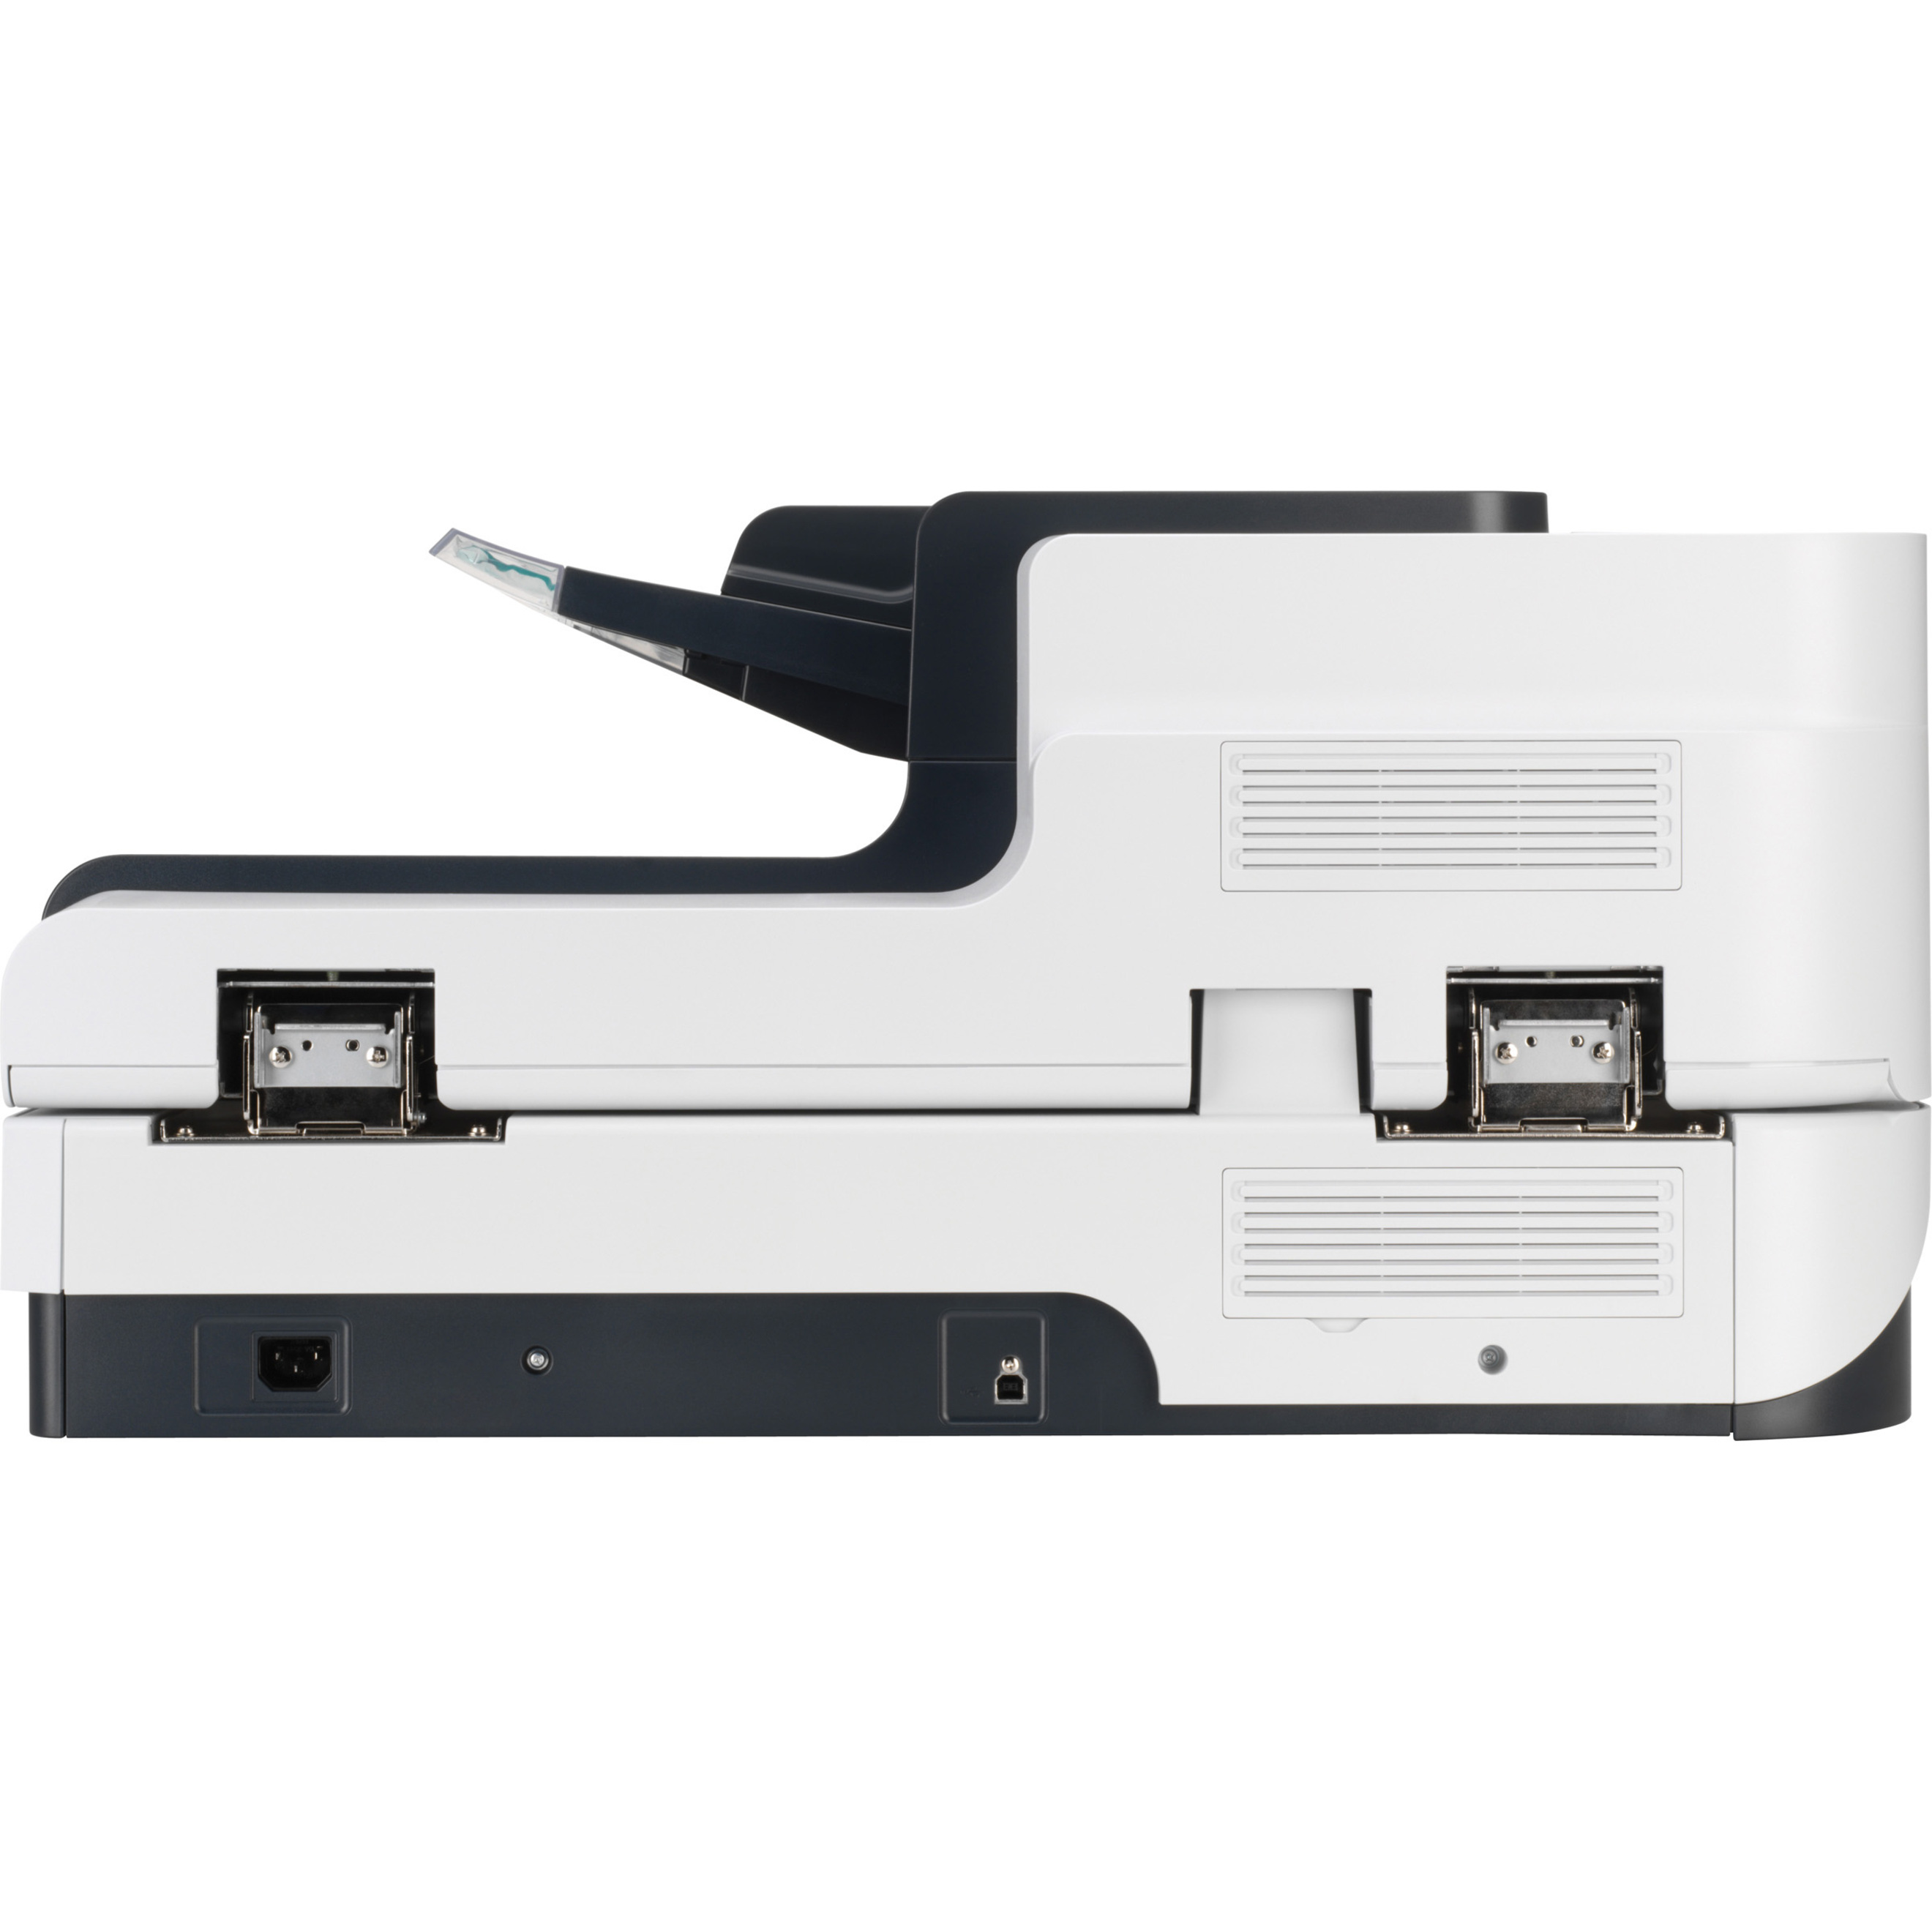 HP ScanJet Enterprise Flow N9120 Flatbed Scanner - document scanner - image 4 of 5